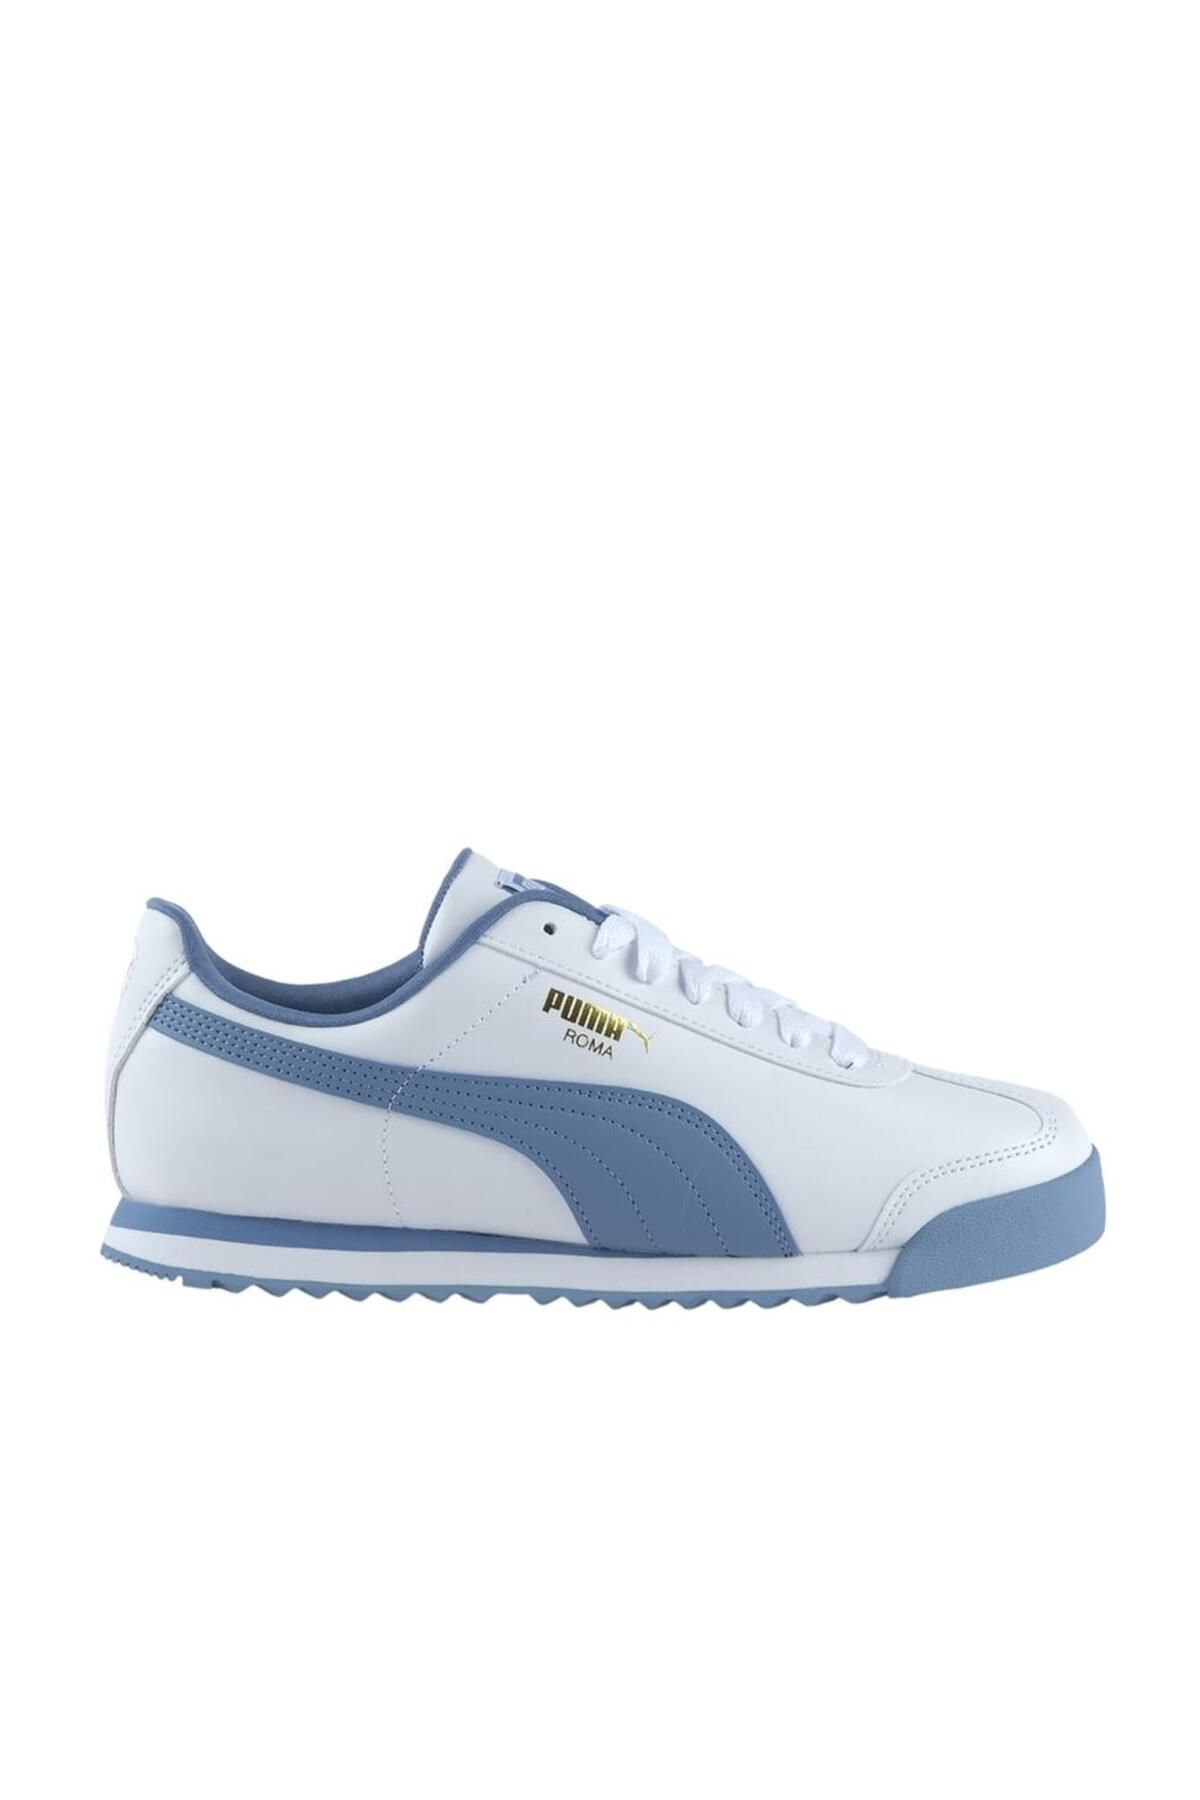 Puma Roma Basic Erkek Beyaz Spor Ayakkabı (369571-52)